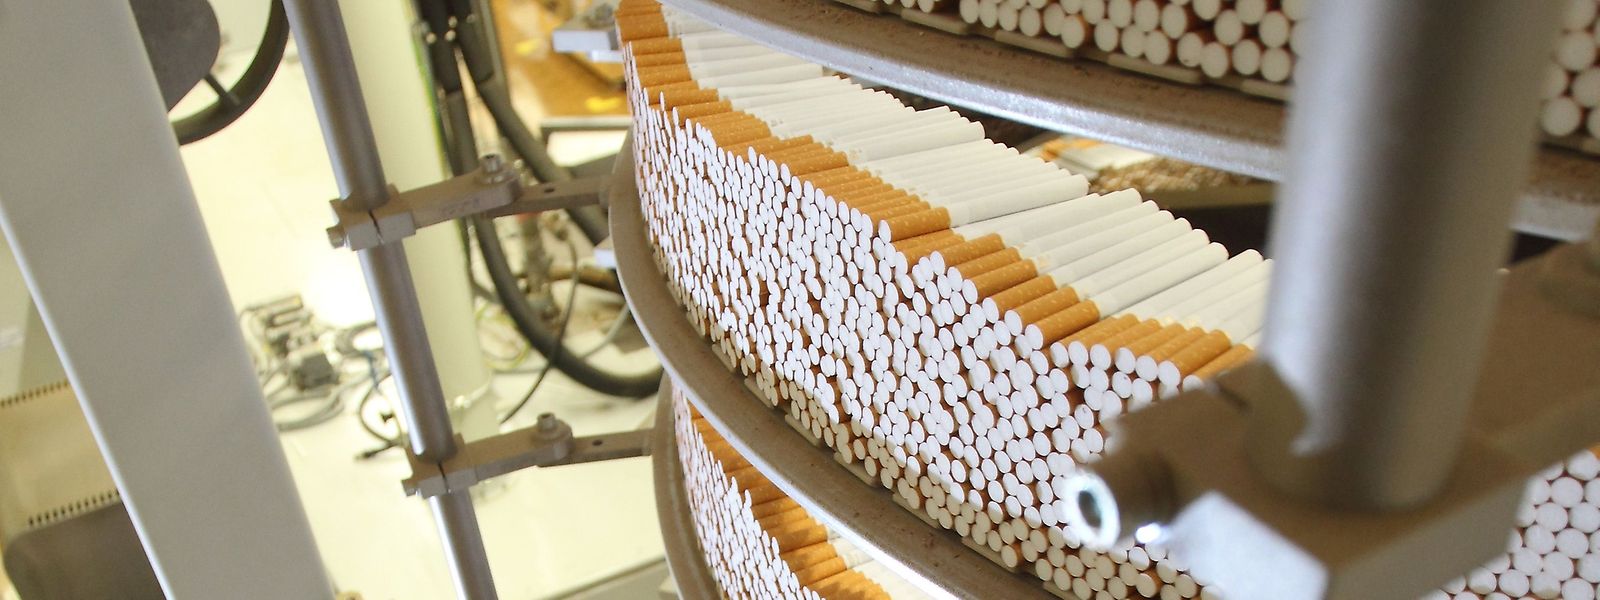 Zigaretten laufen im Trierer Werk des Herstellers Japan Tobacco International - demnächst wird ein Teil der Produktion nach Polen verlagert.